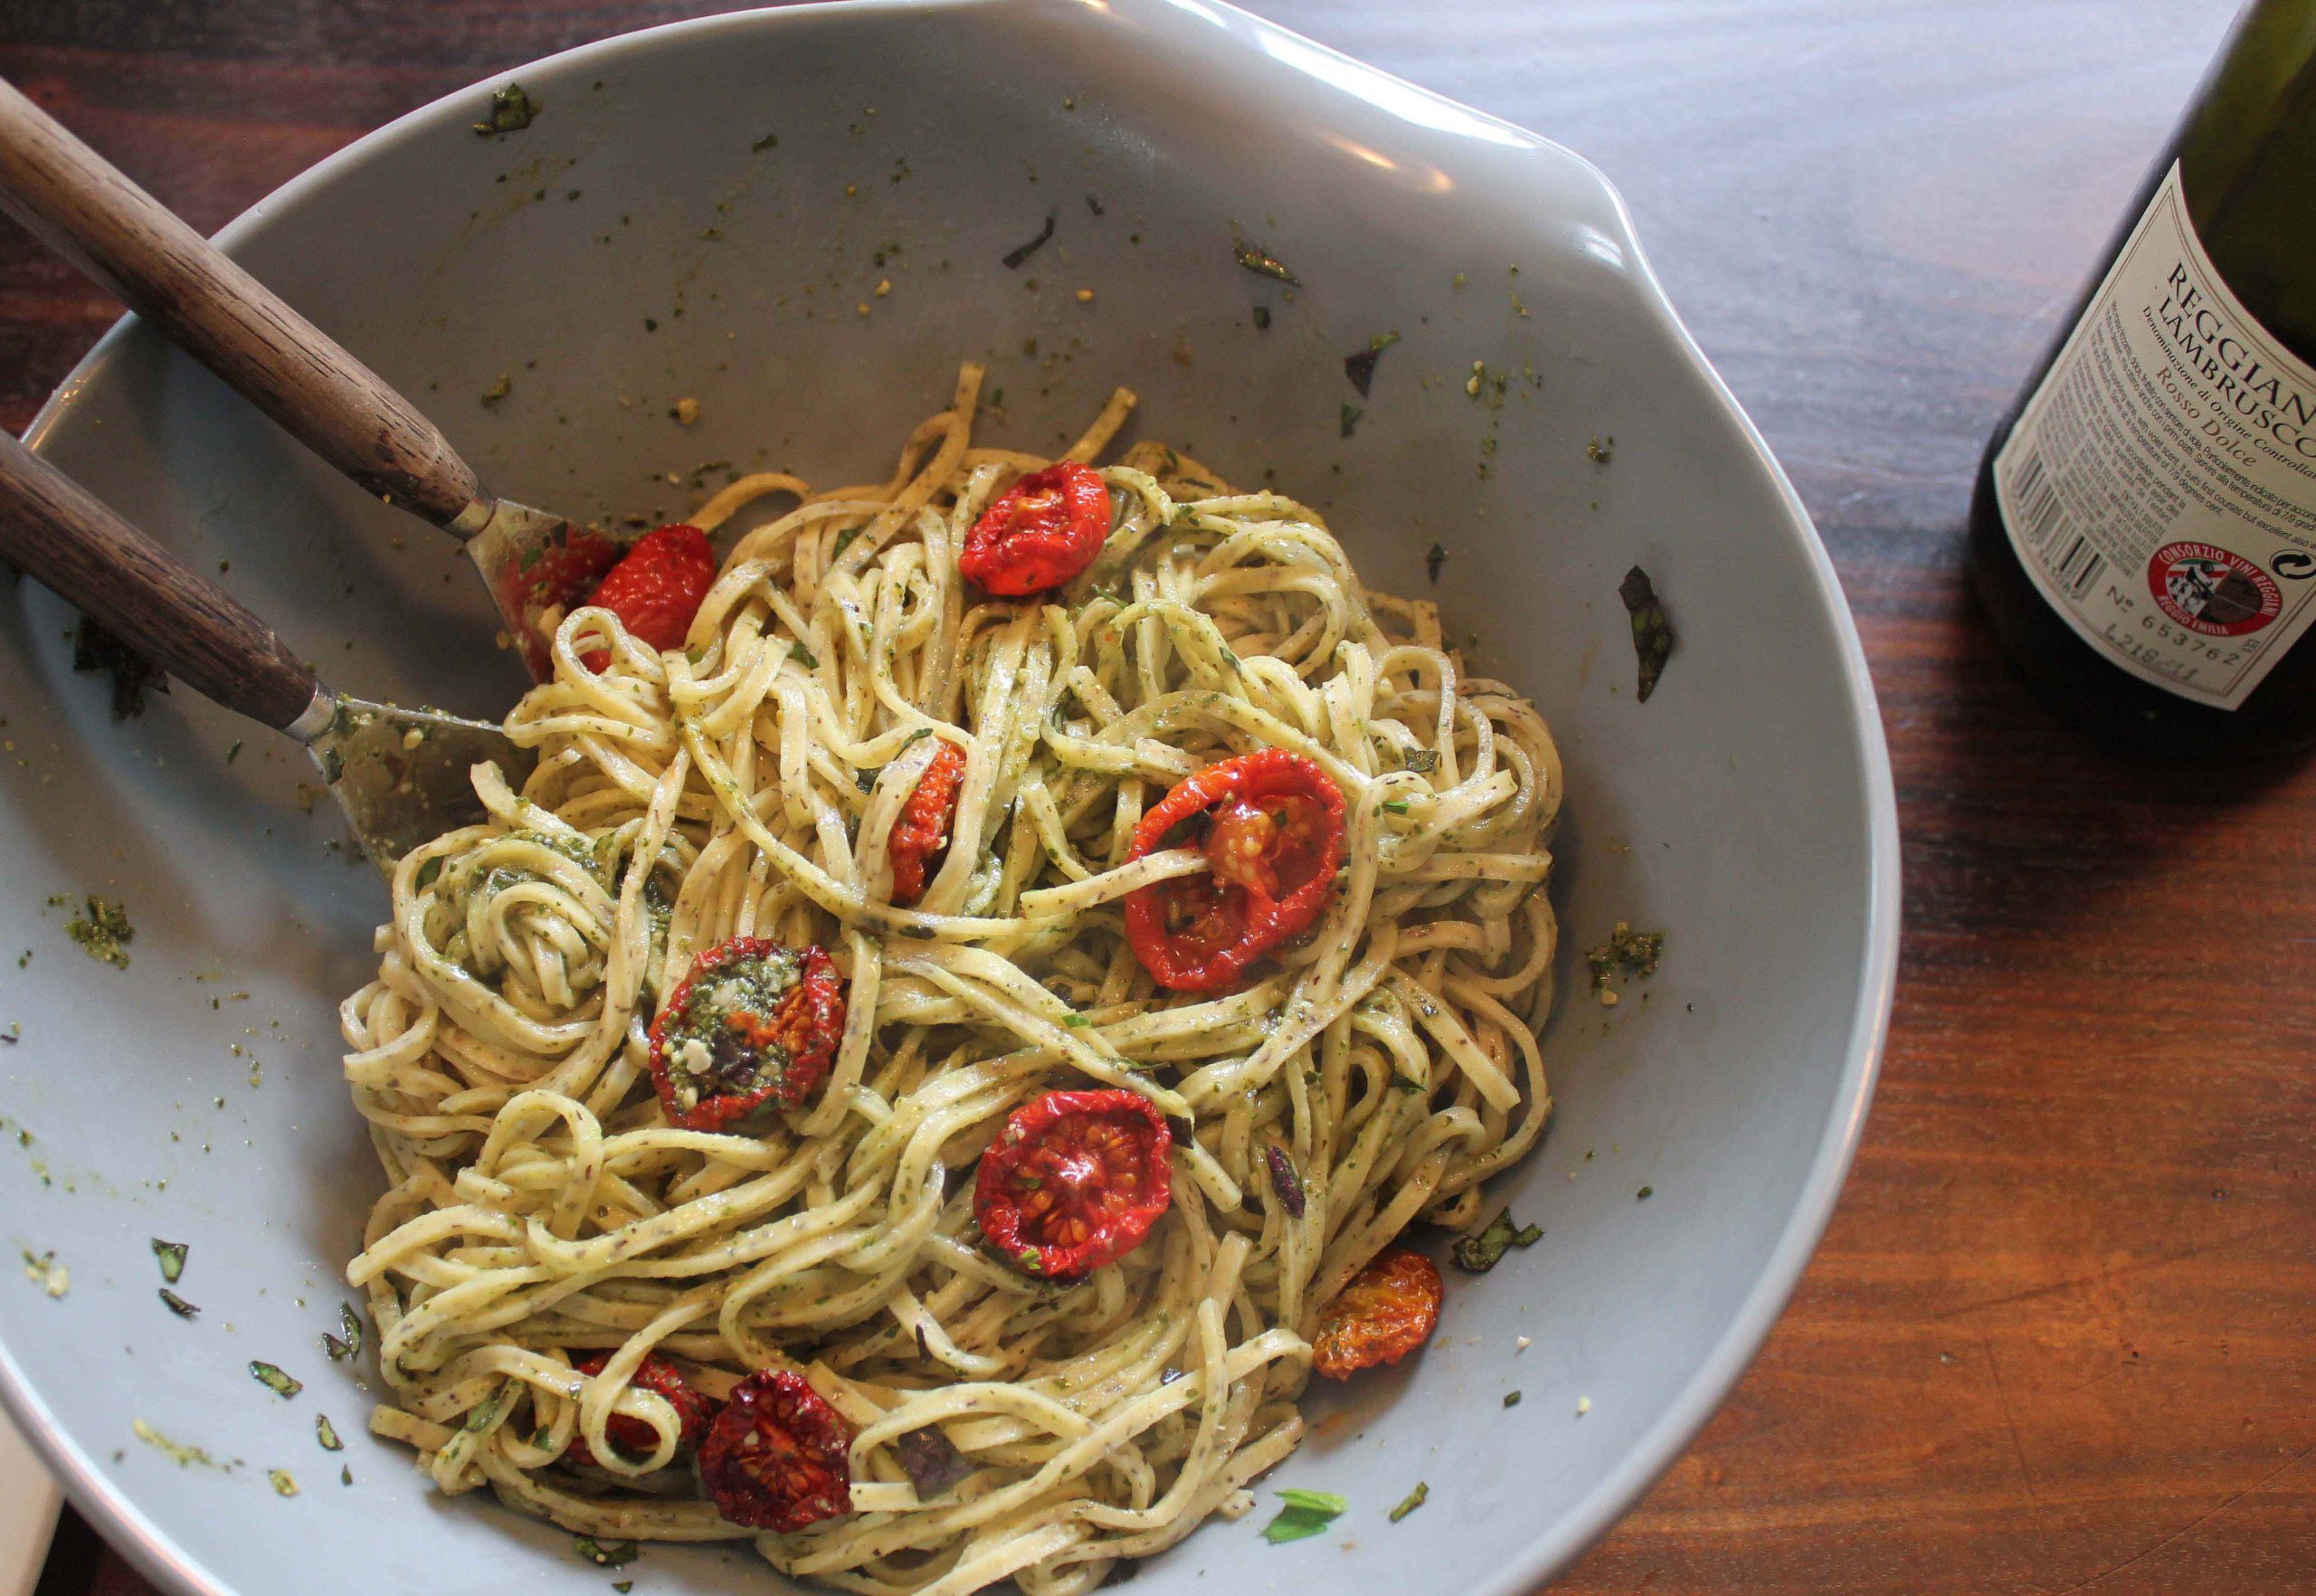 Fredagens Kreative Køkken byder på en prægtig pasta med pesto